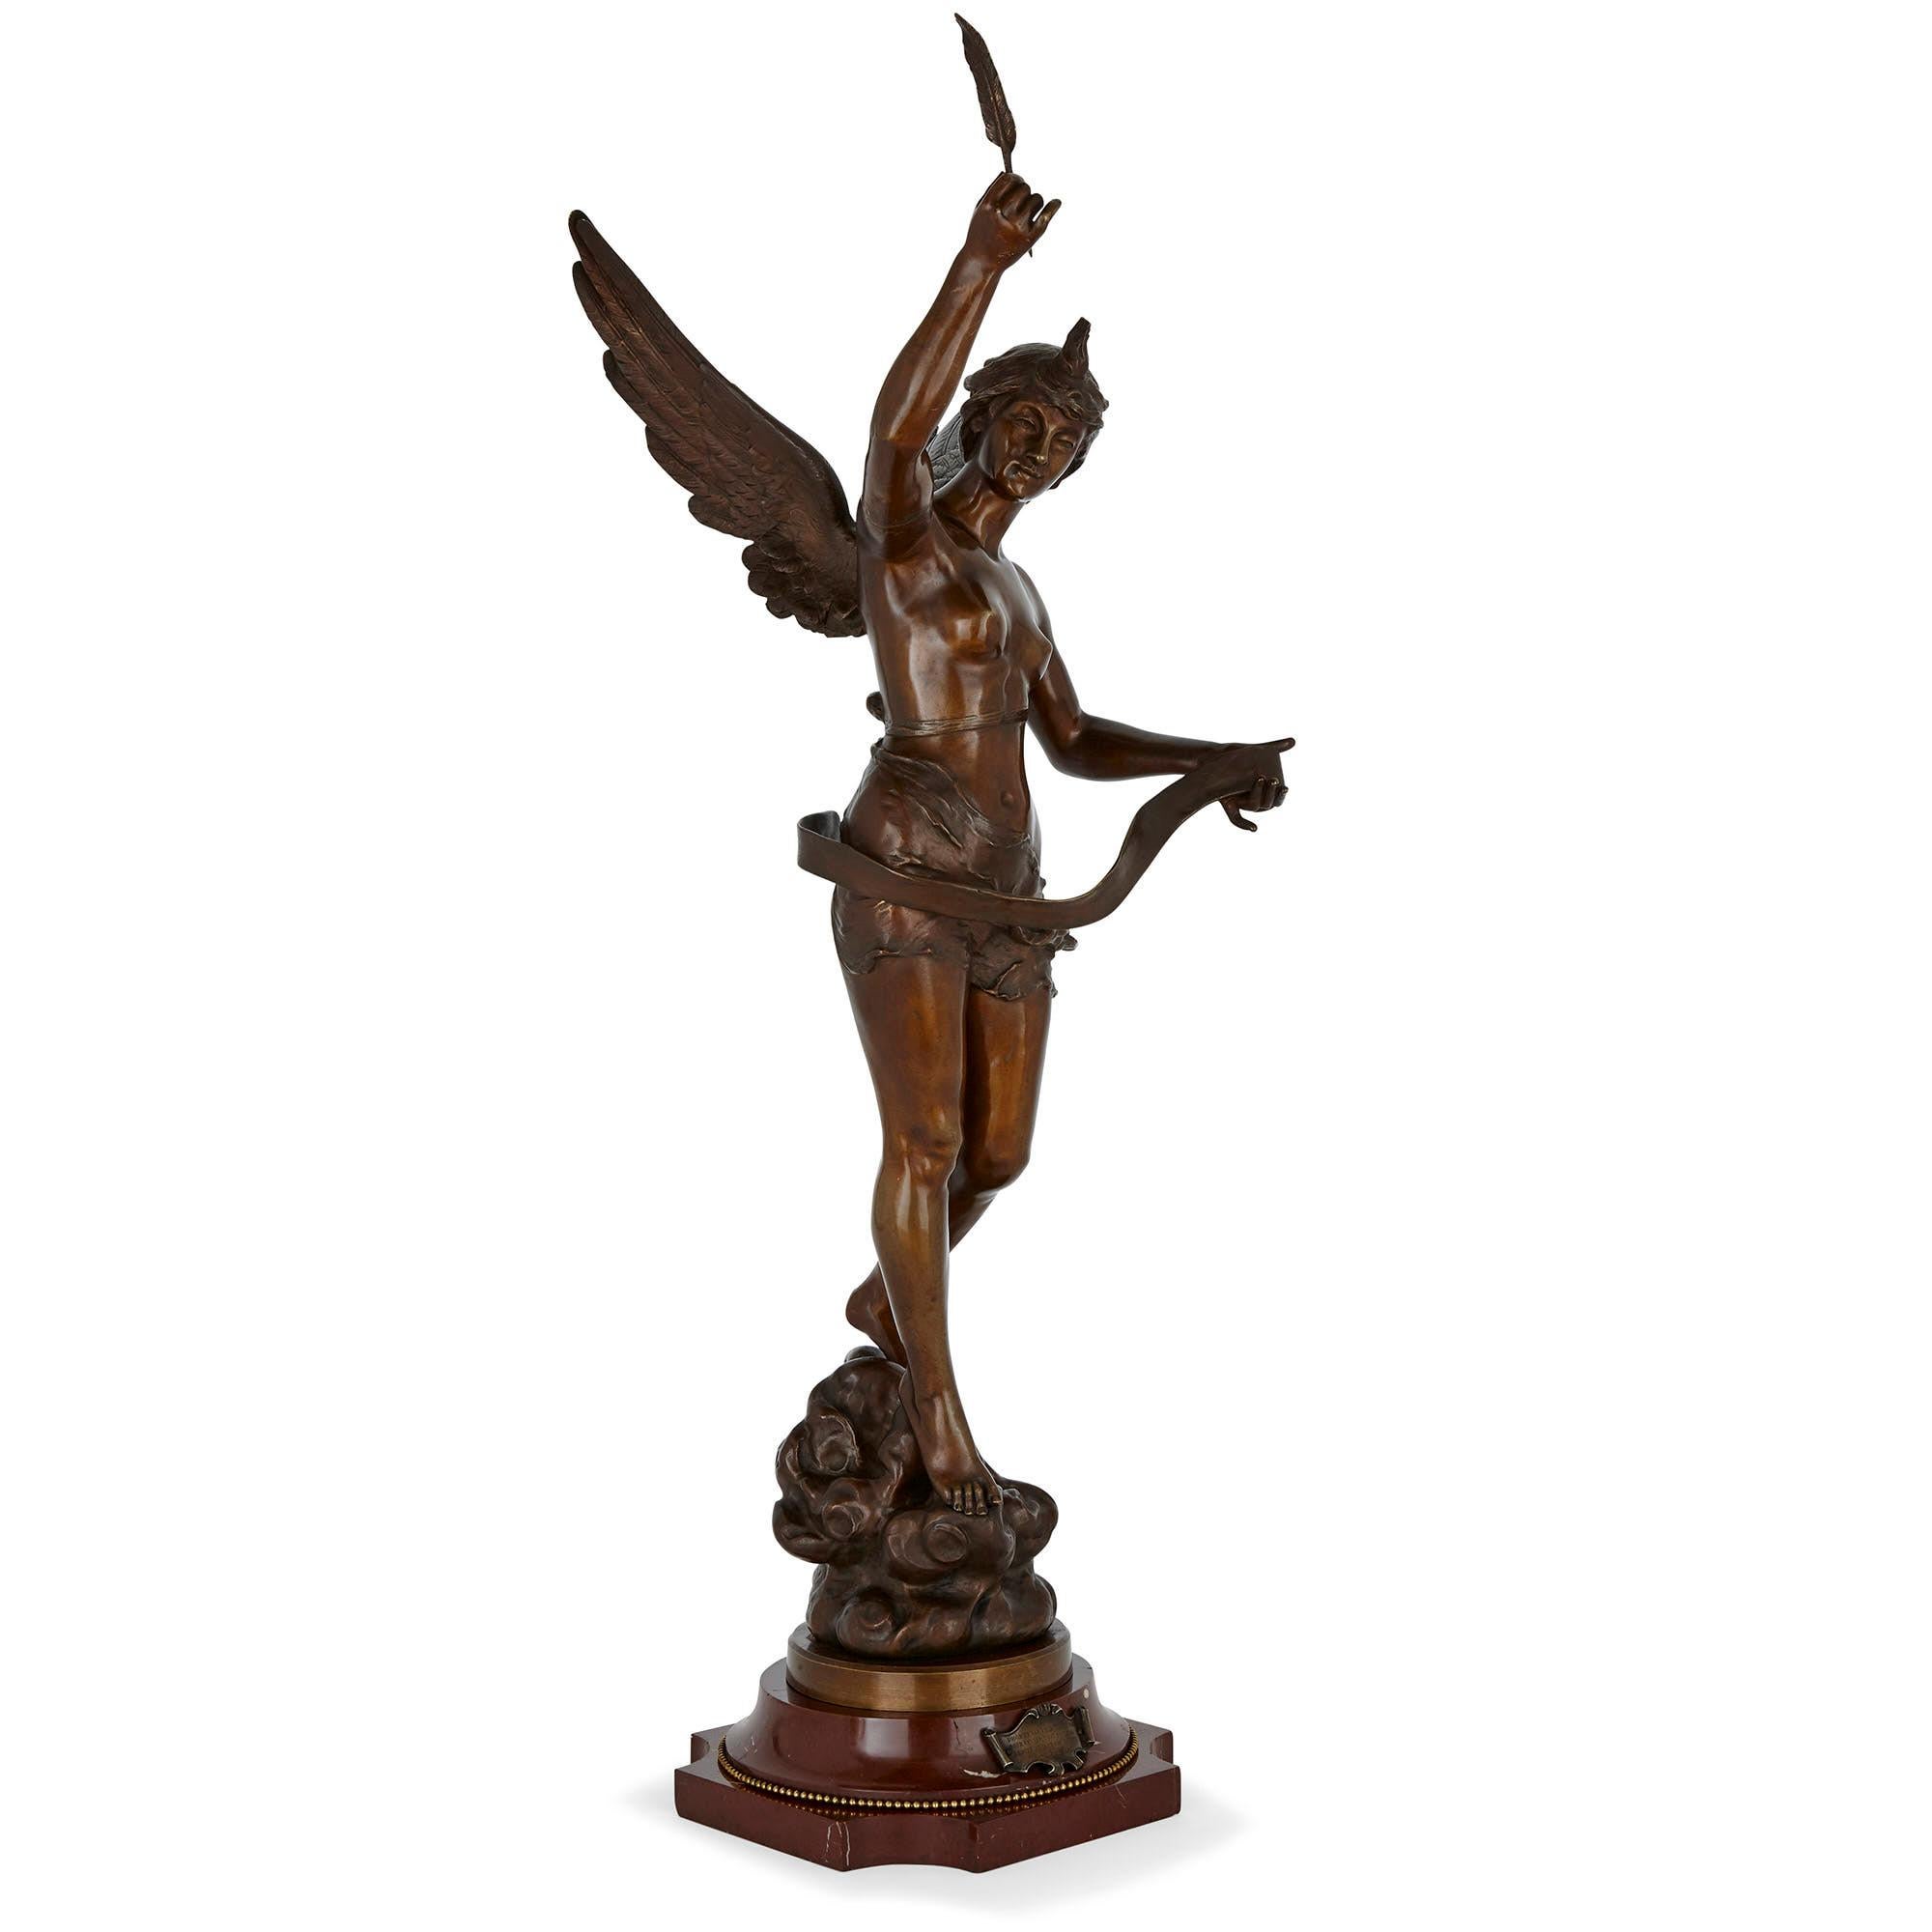 Cette sculpture en bronze patiné, réalisée par le sculpteur français Ernest Justin Ferrand, représente une figure féminine ailée tenant une plume d'oie et un rouleau de papier déroulé. Elle se tient debout de façon naturaliste, dans une posture de